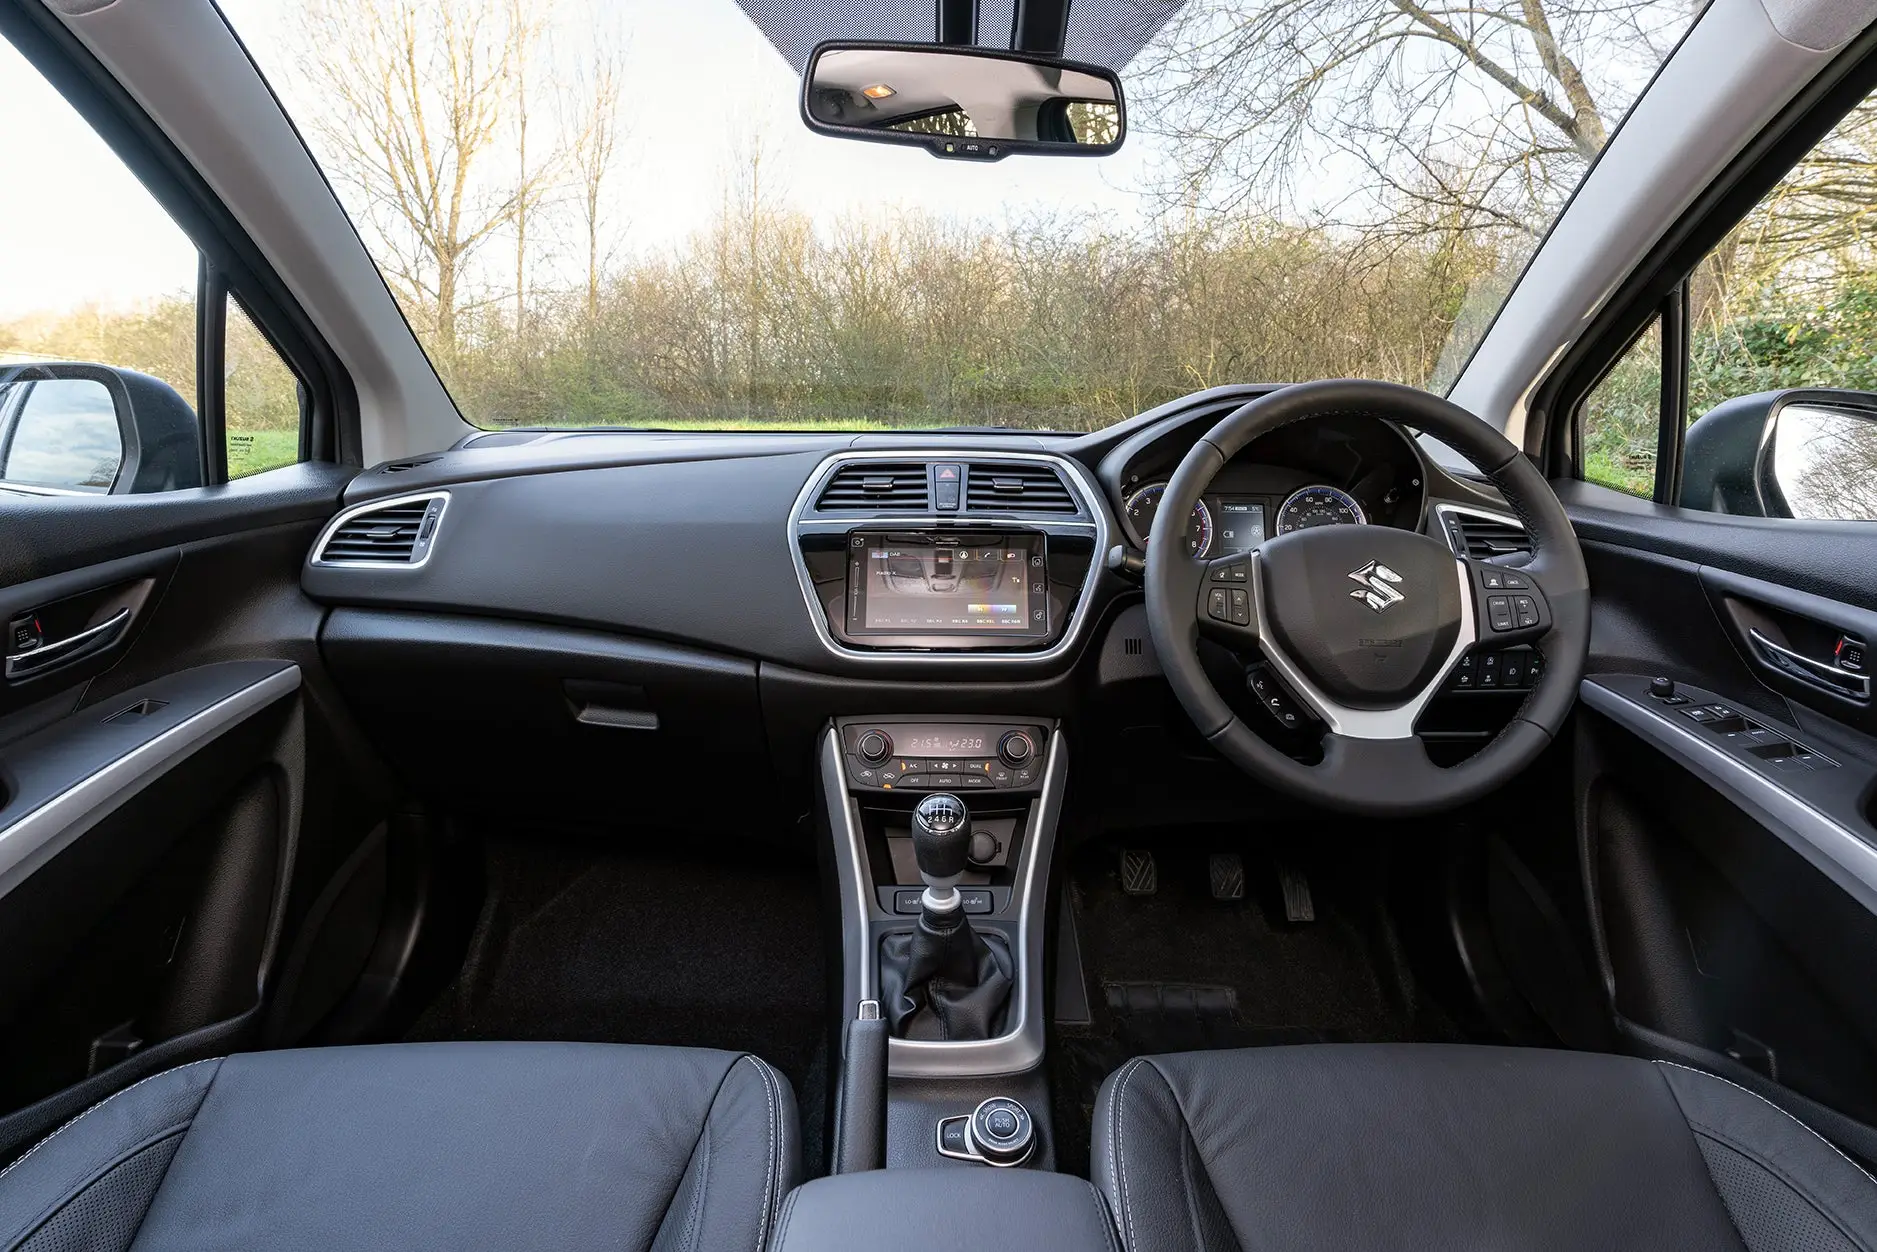 Suzuki SX4 S-Cross Front Interior